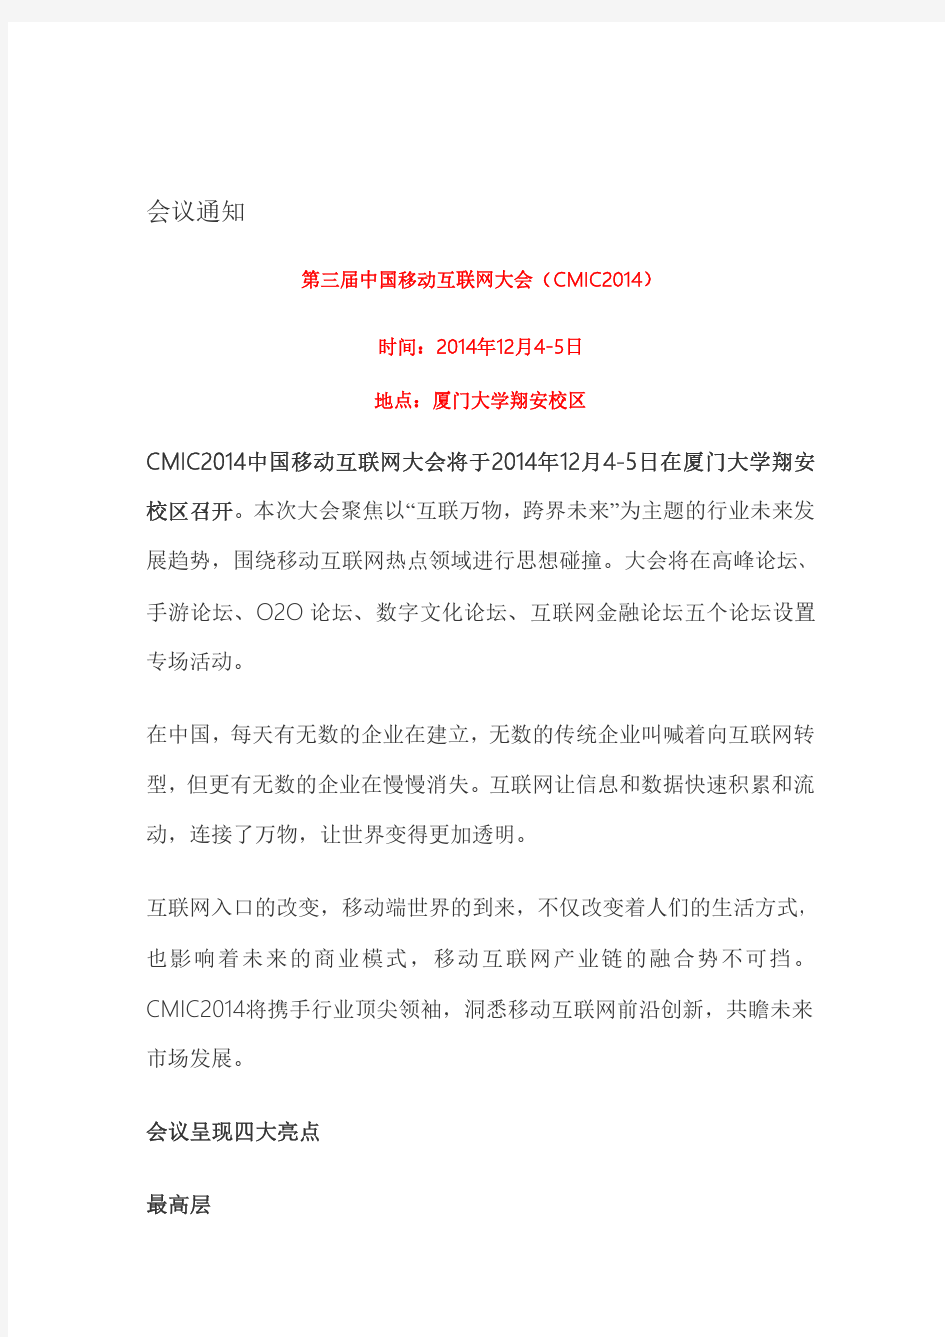 第三届中国移动互联网大会(CMIC2014)邀请函